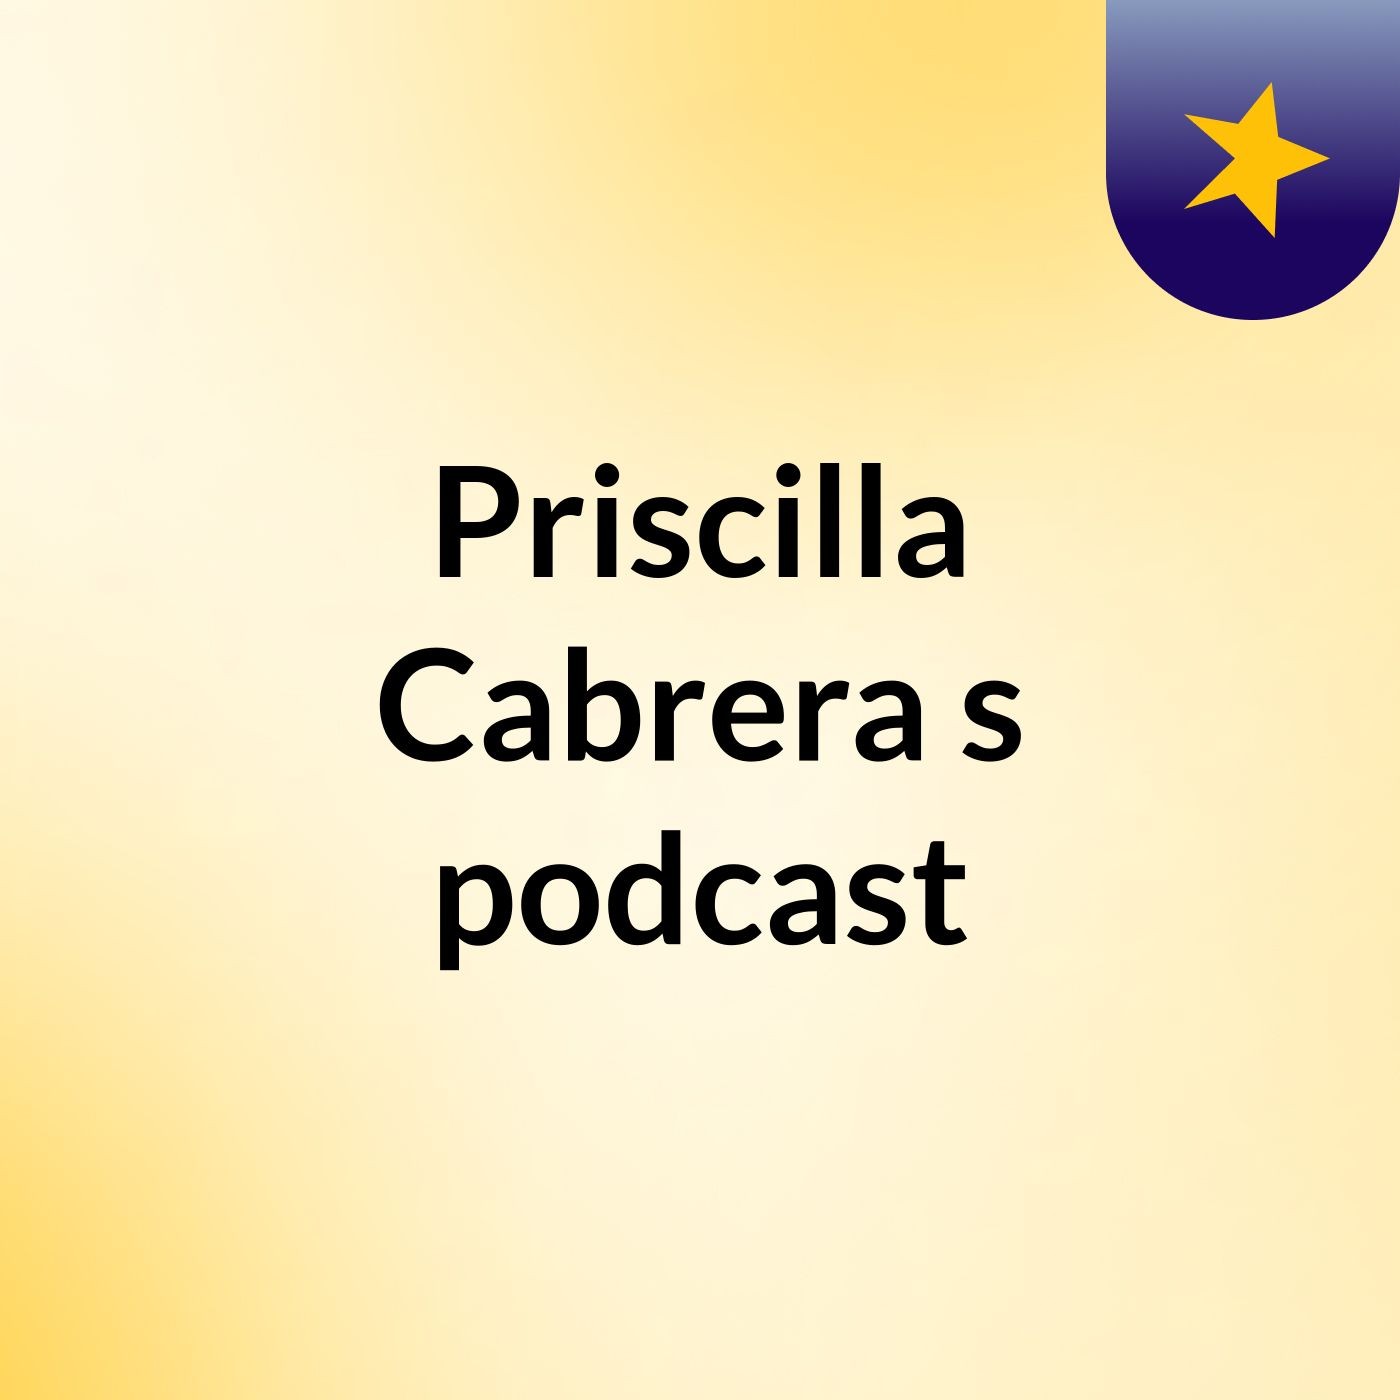 Priscilla Cabrera's podcast